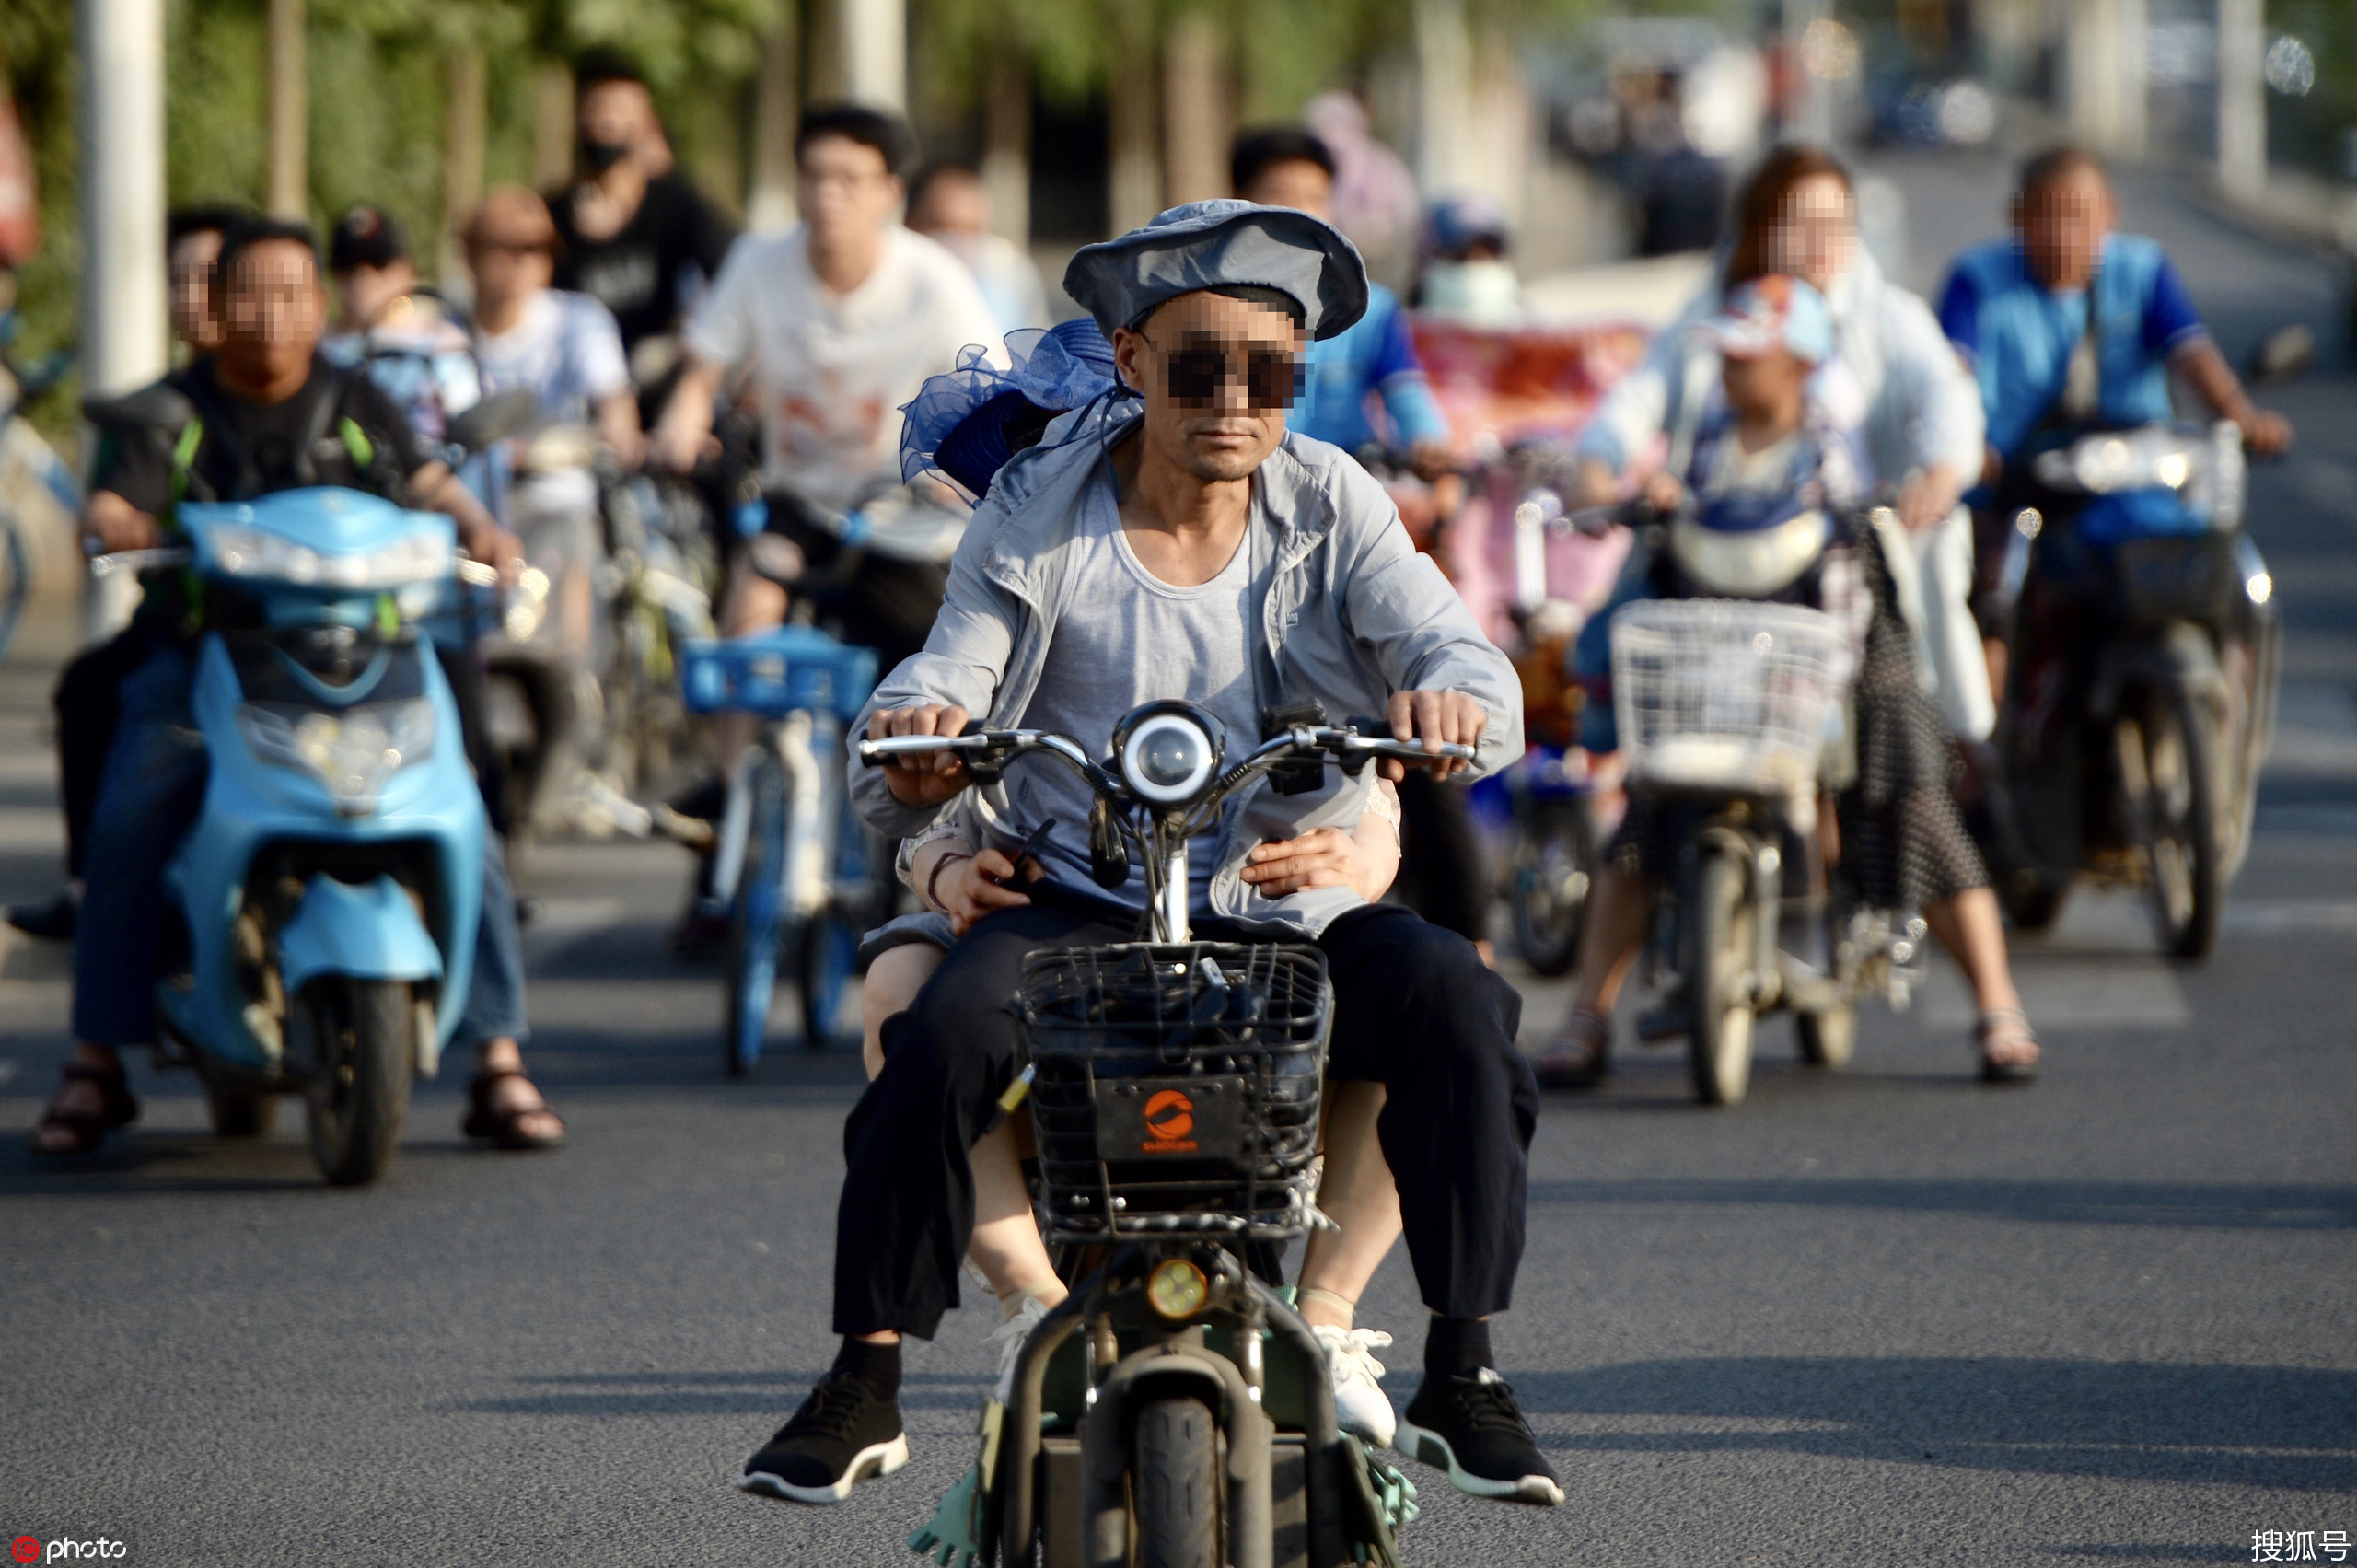 北京街头探访 骑行电动自行车未戴头盔较普遍